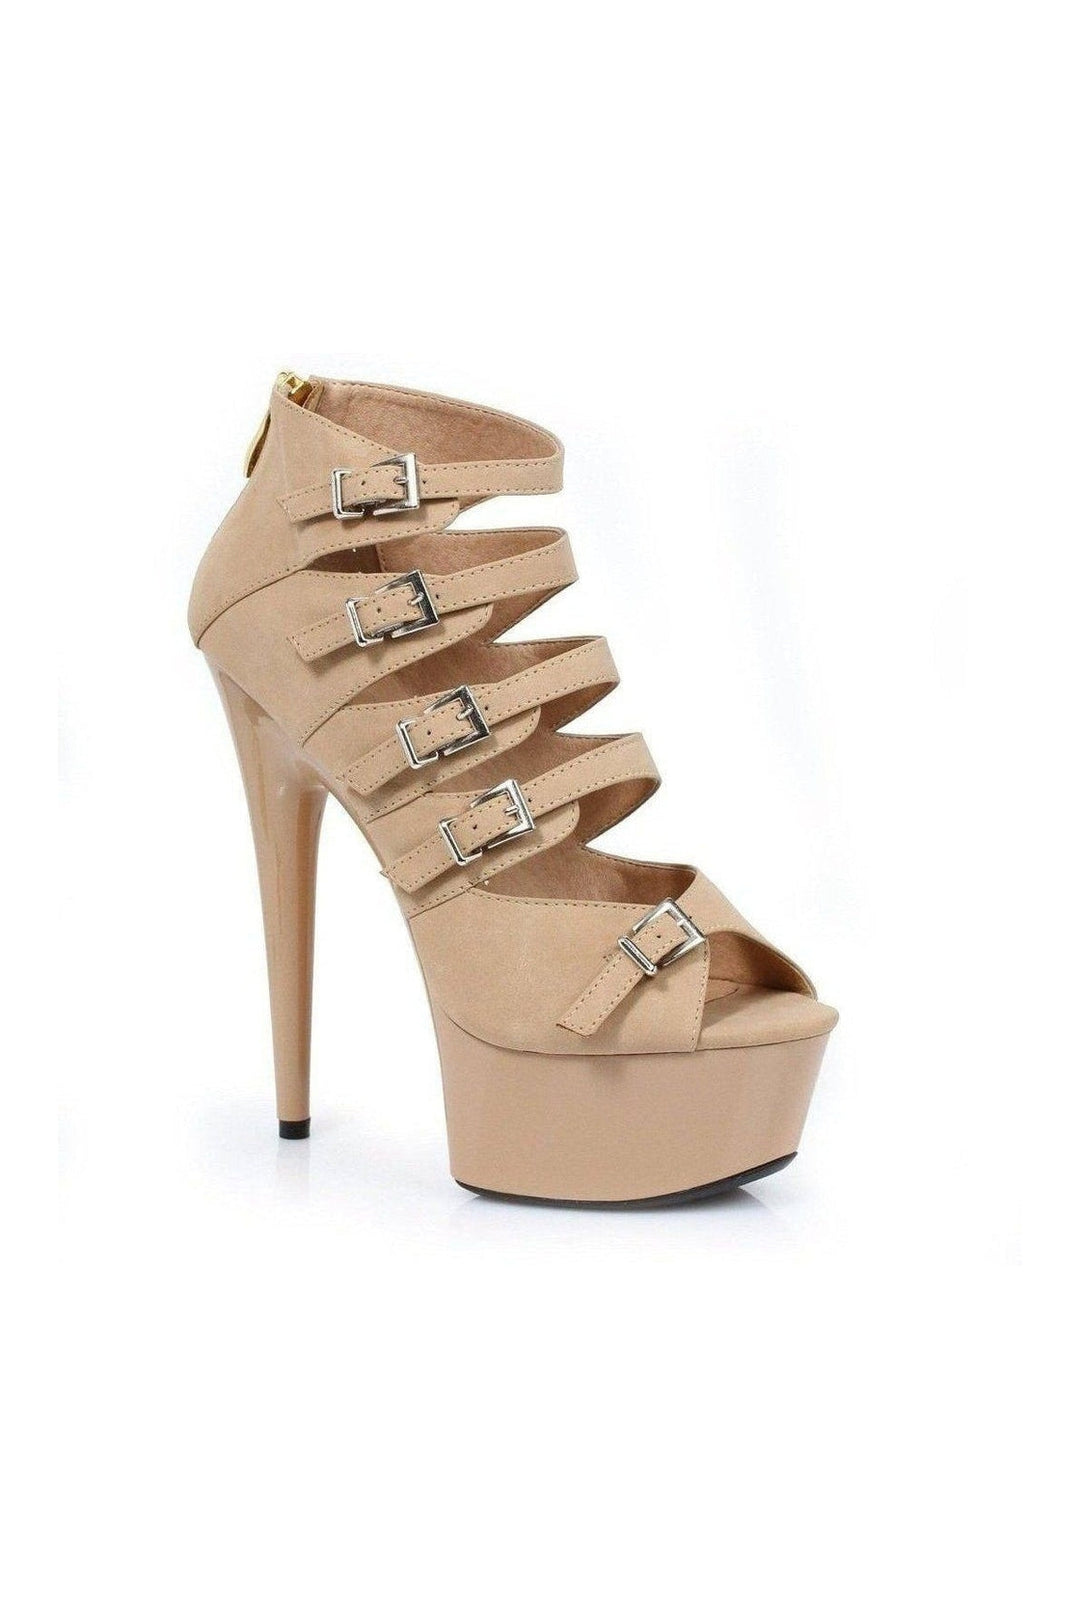 609-UNA Platform Sandal | Nude Faux Leather-Ellie Shoes-Nude-Sandals-SEXYSHOES.COM